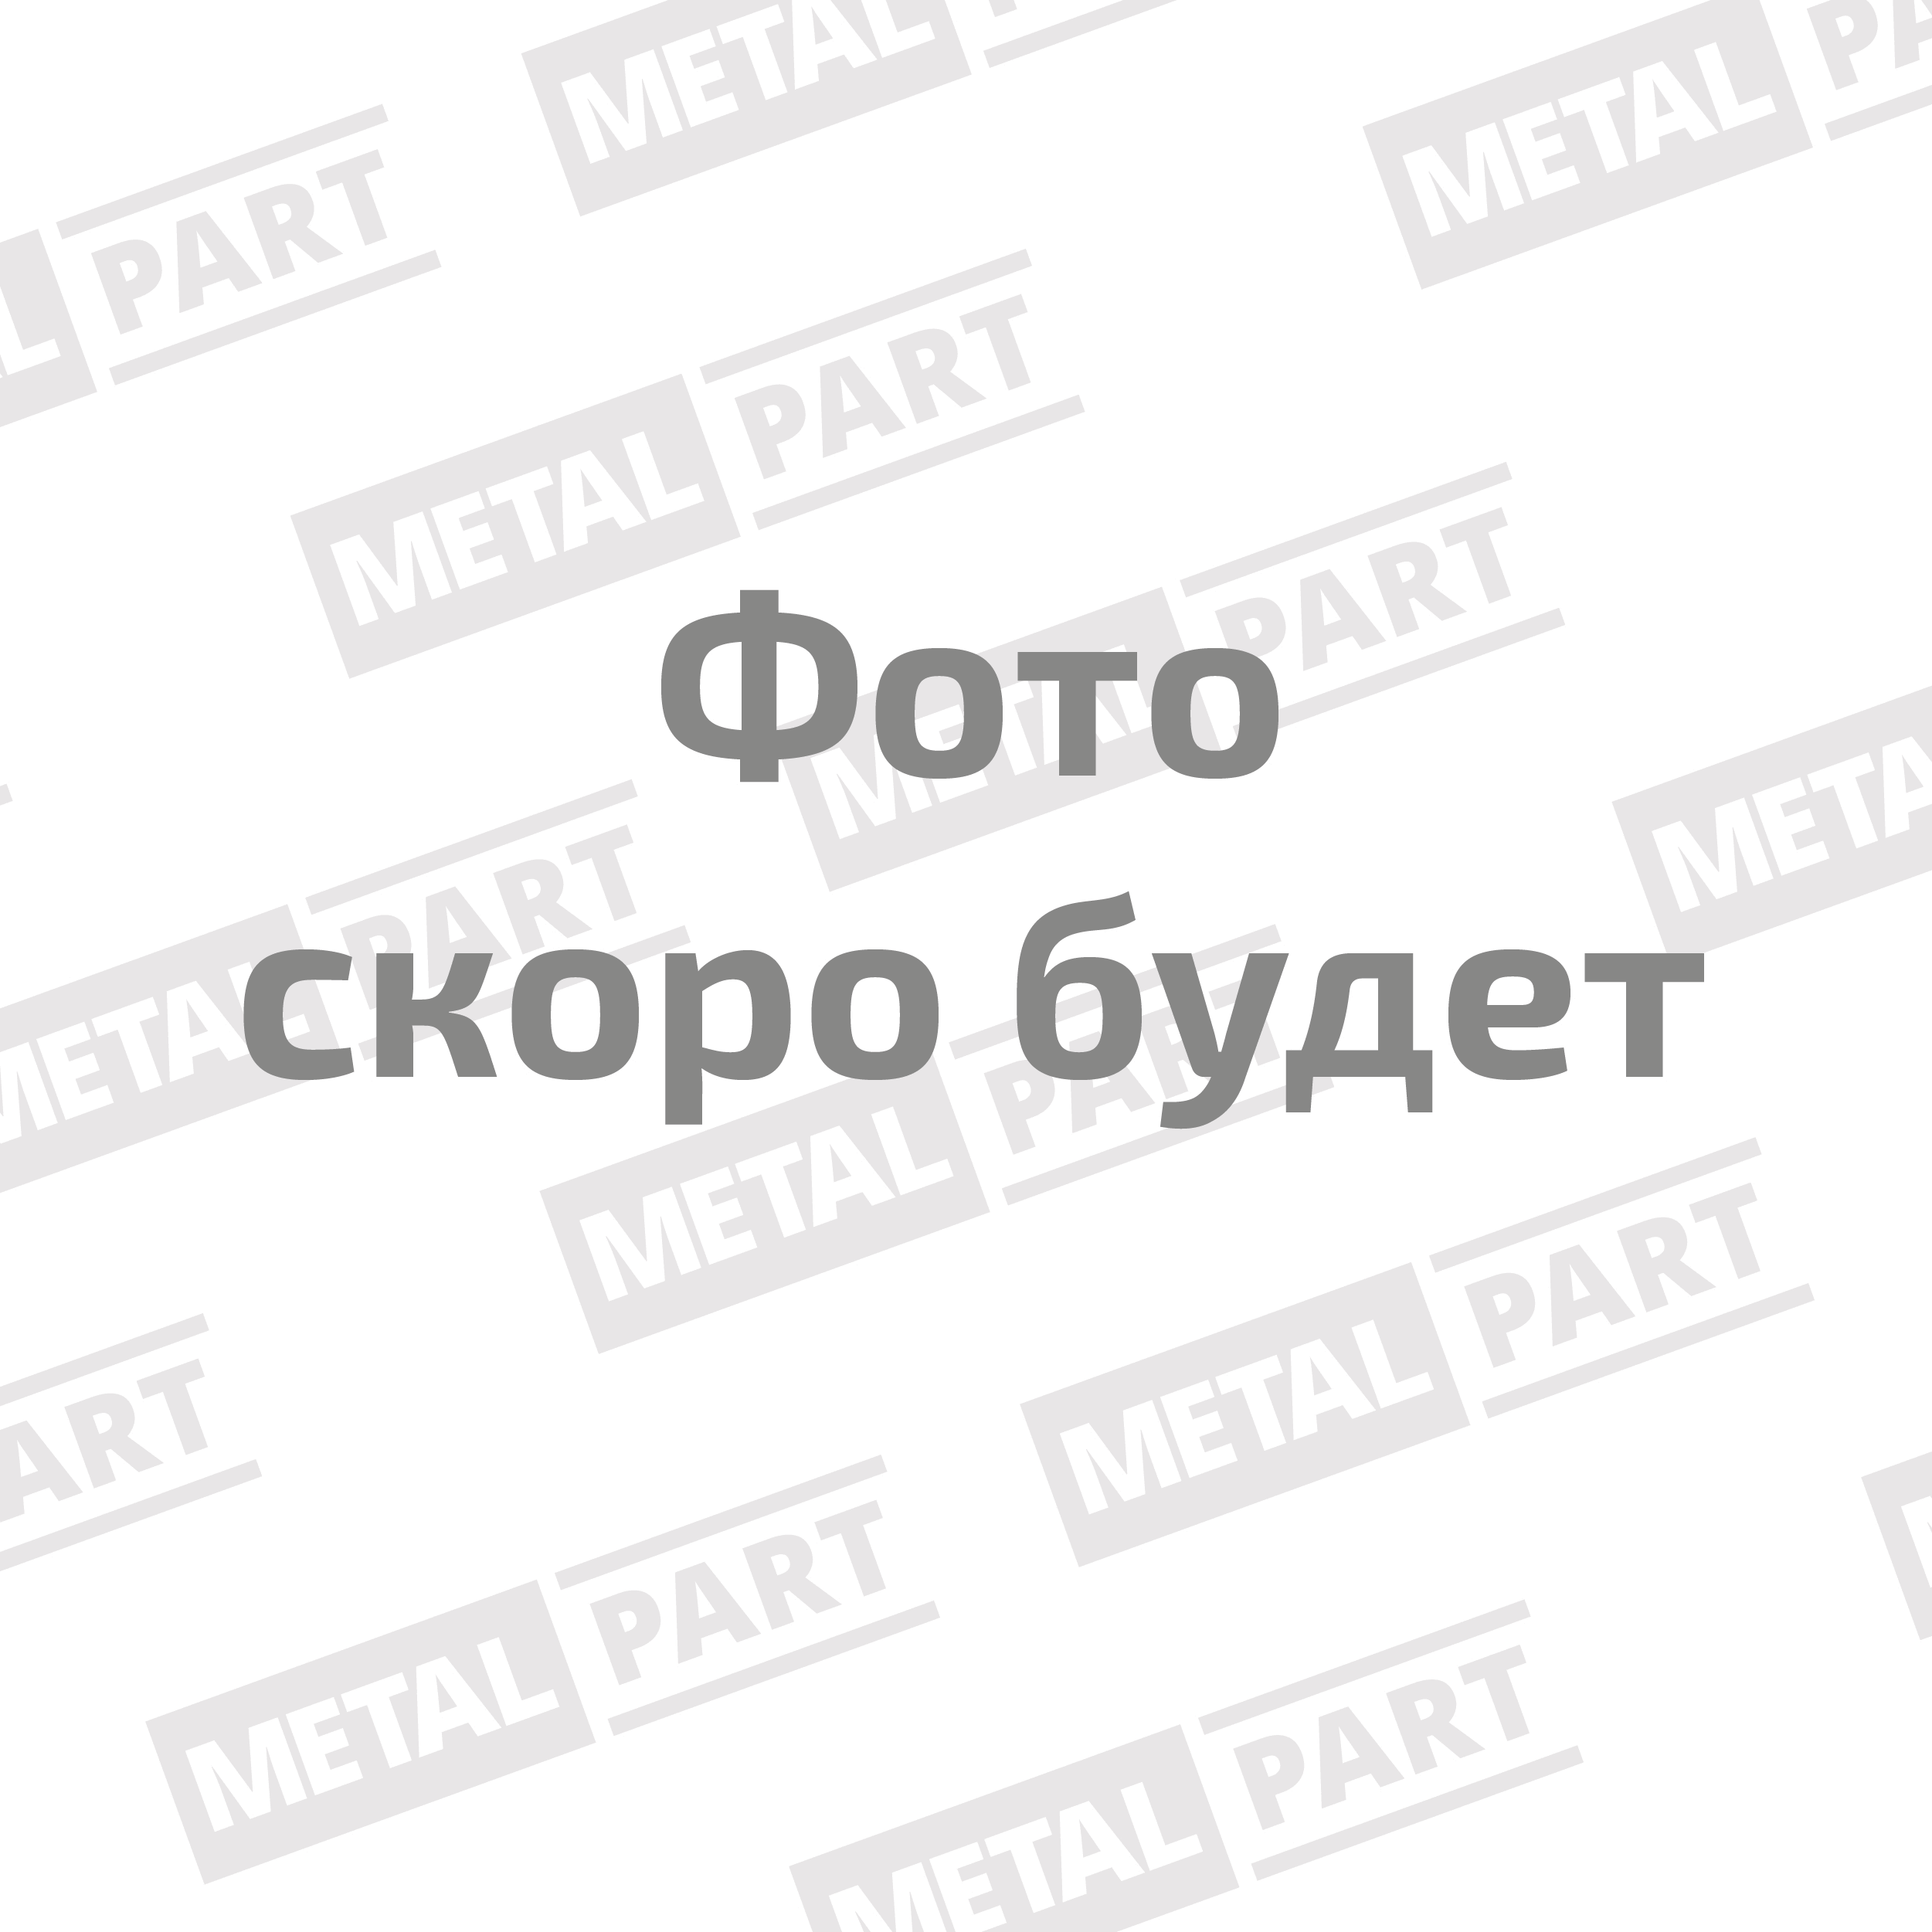 Вал карданный "MetalPart" переднего моста для автомобилей УАЗ-2206, -3741, -3909, -452 с мостами "Т